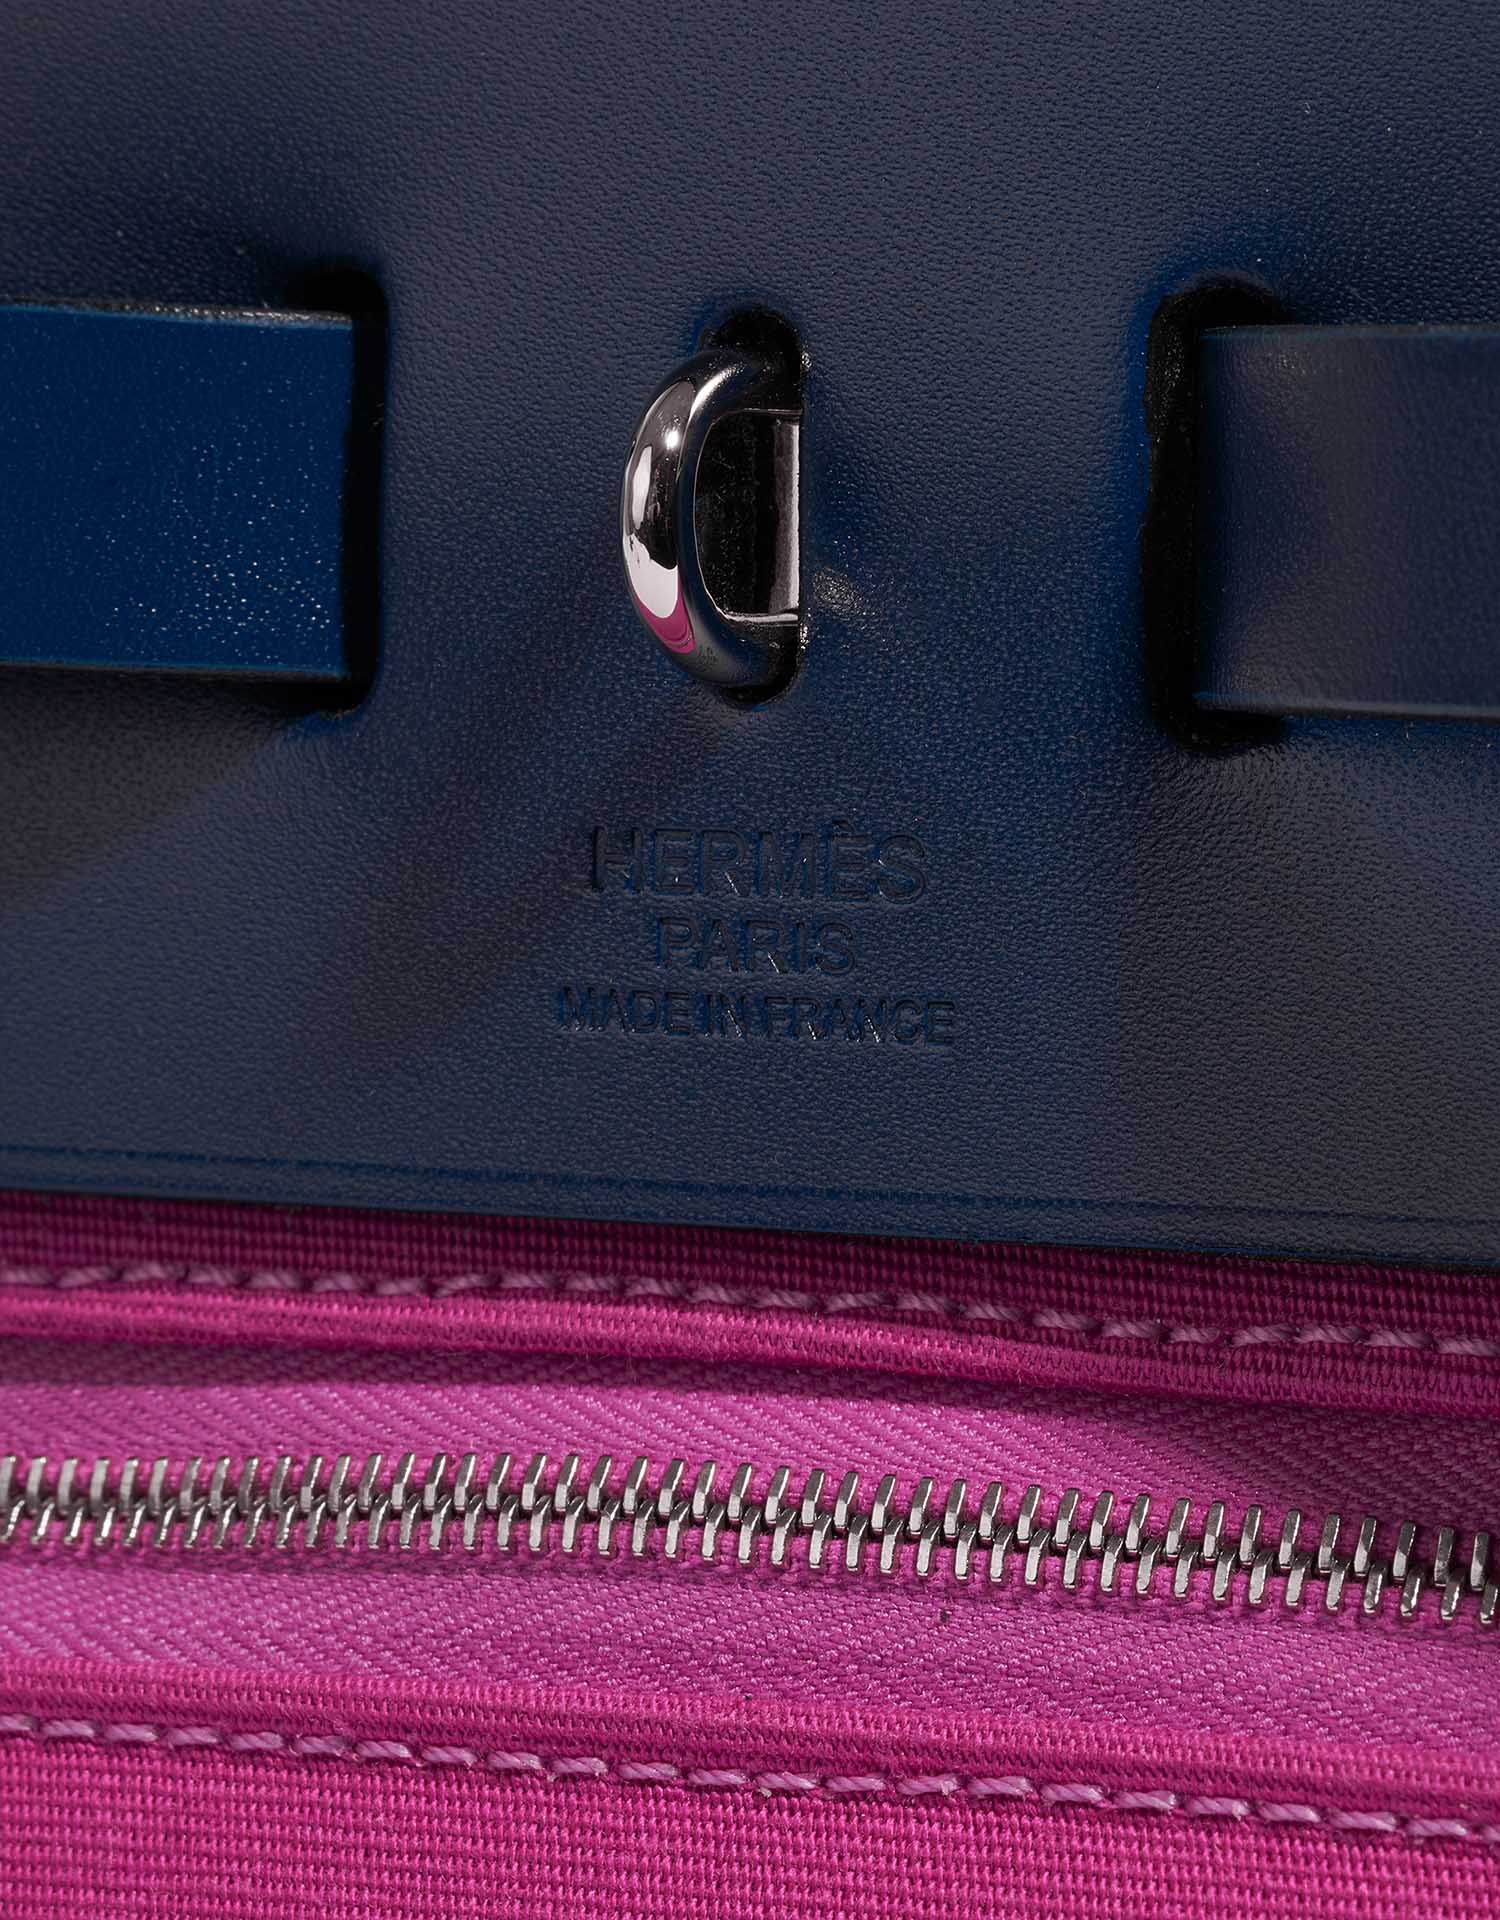 Gebrauchte Hermès Tasche Herbag 31 Vache Hunter / Toile Bleu Saphir / Magnolia Pink Logo | Verkaufen Sie Ihre Designer-Tasche auf Saclab.com